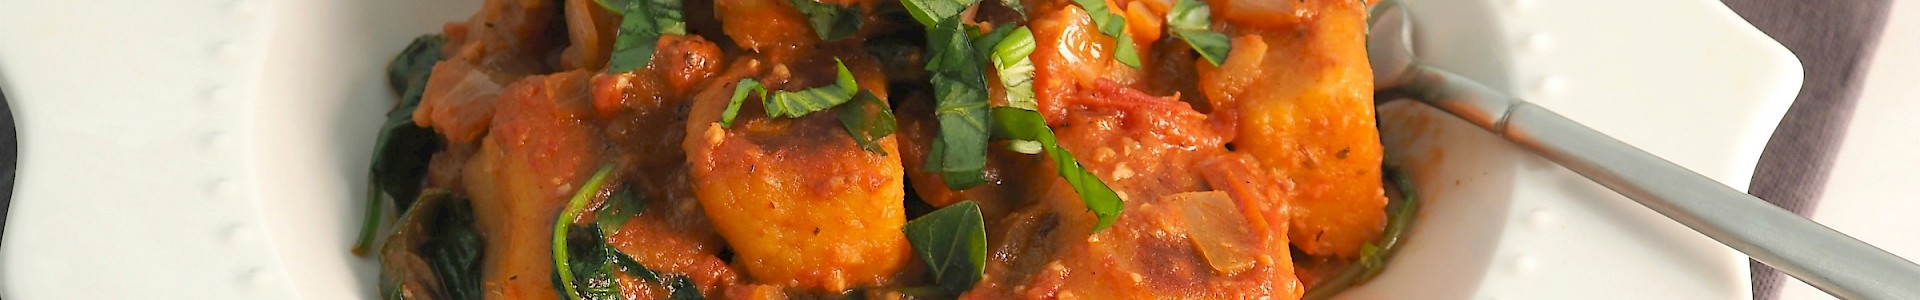 Gnocchi with Creamy Tomato & Spinach Sauce